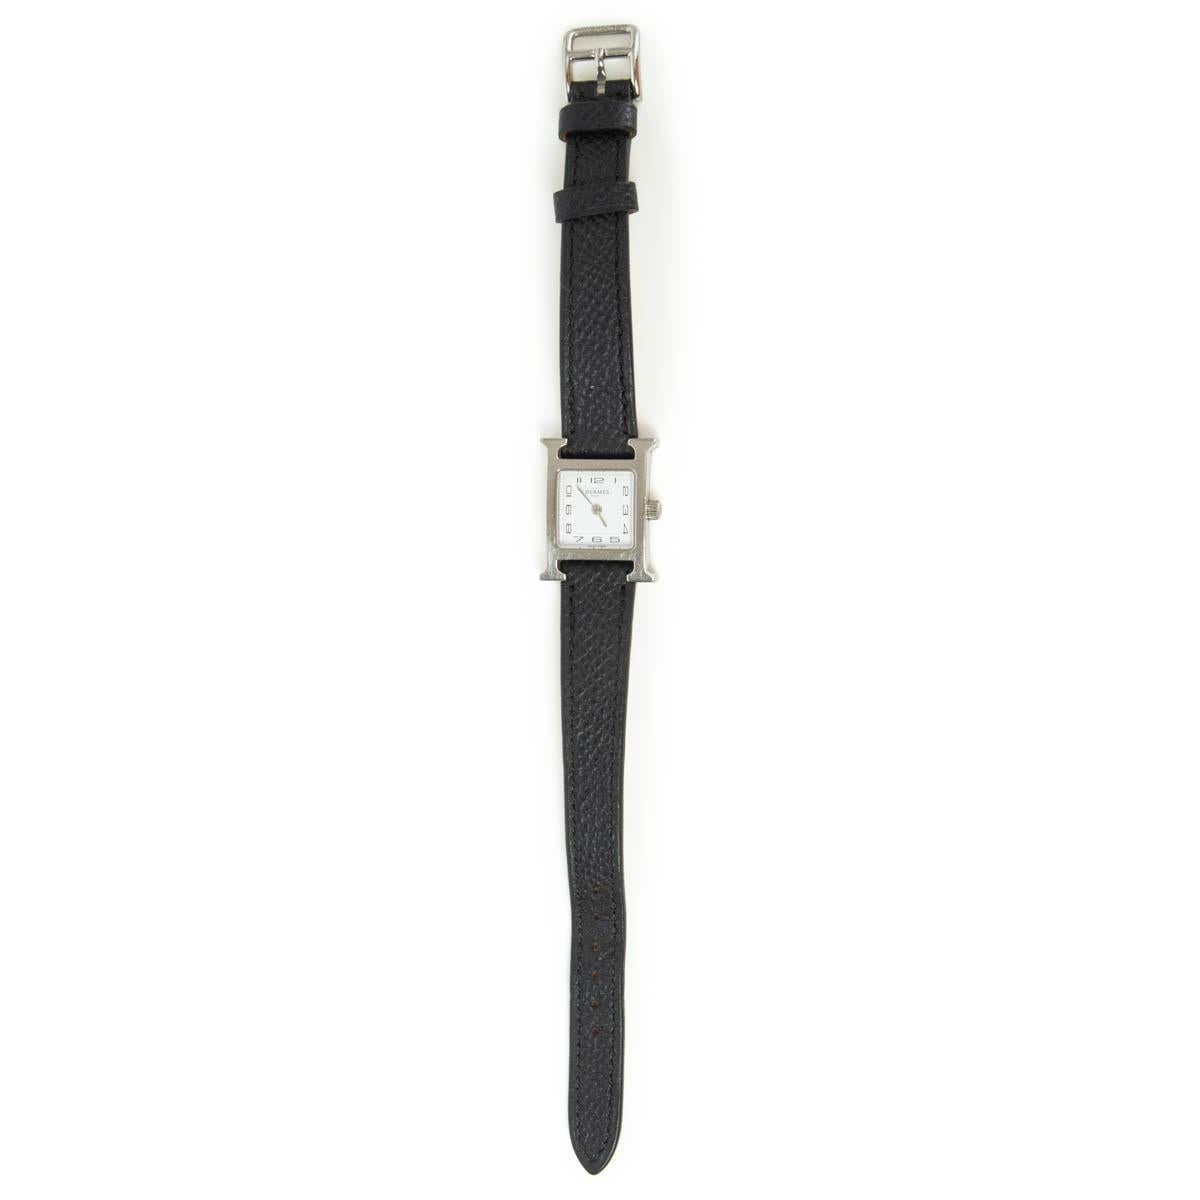 100% authentique Hermès Heure H Watch Mini Modèle 21mm en acier avec un cadran blanc et estampillé soleil. Mouvement à quartz et bracelet en veau Epsom noir. Fonctions heures, minutes. Il a été porté et présente quelques rayures au niveau de la